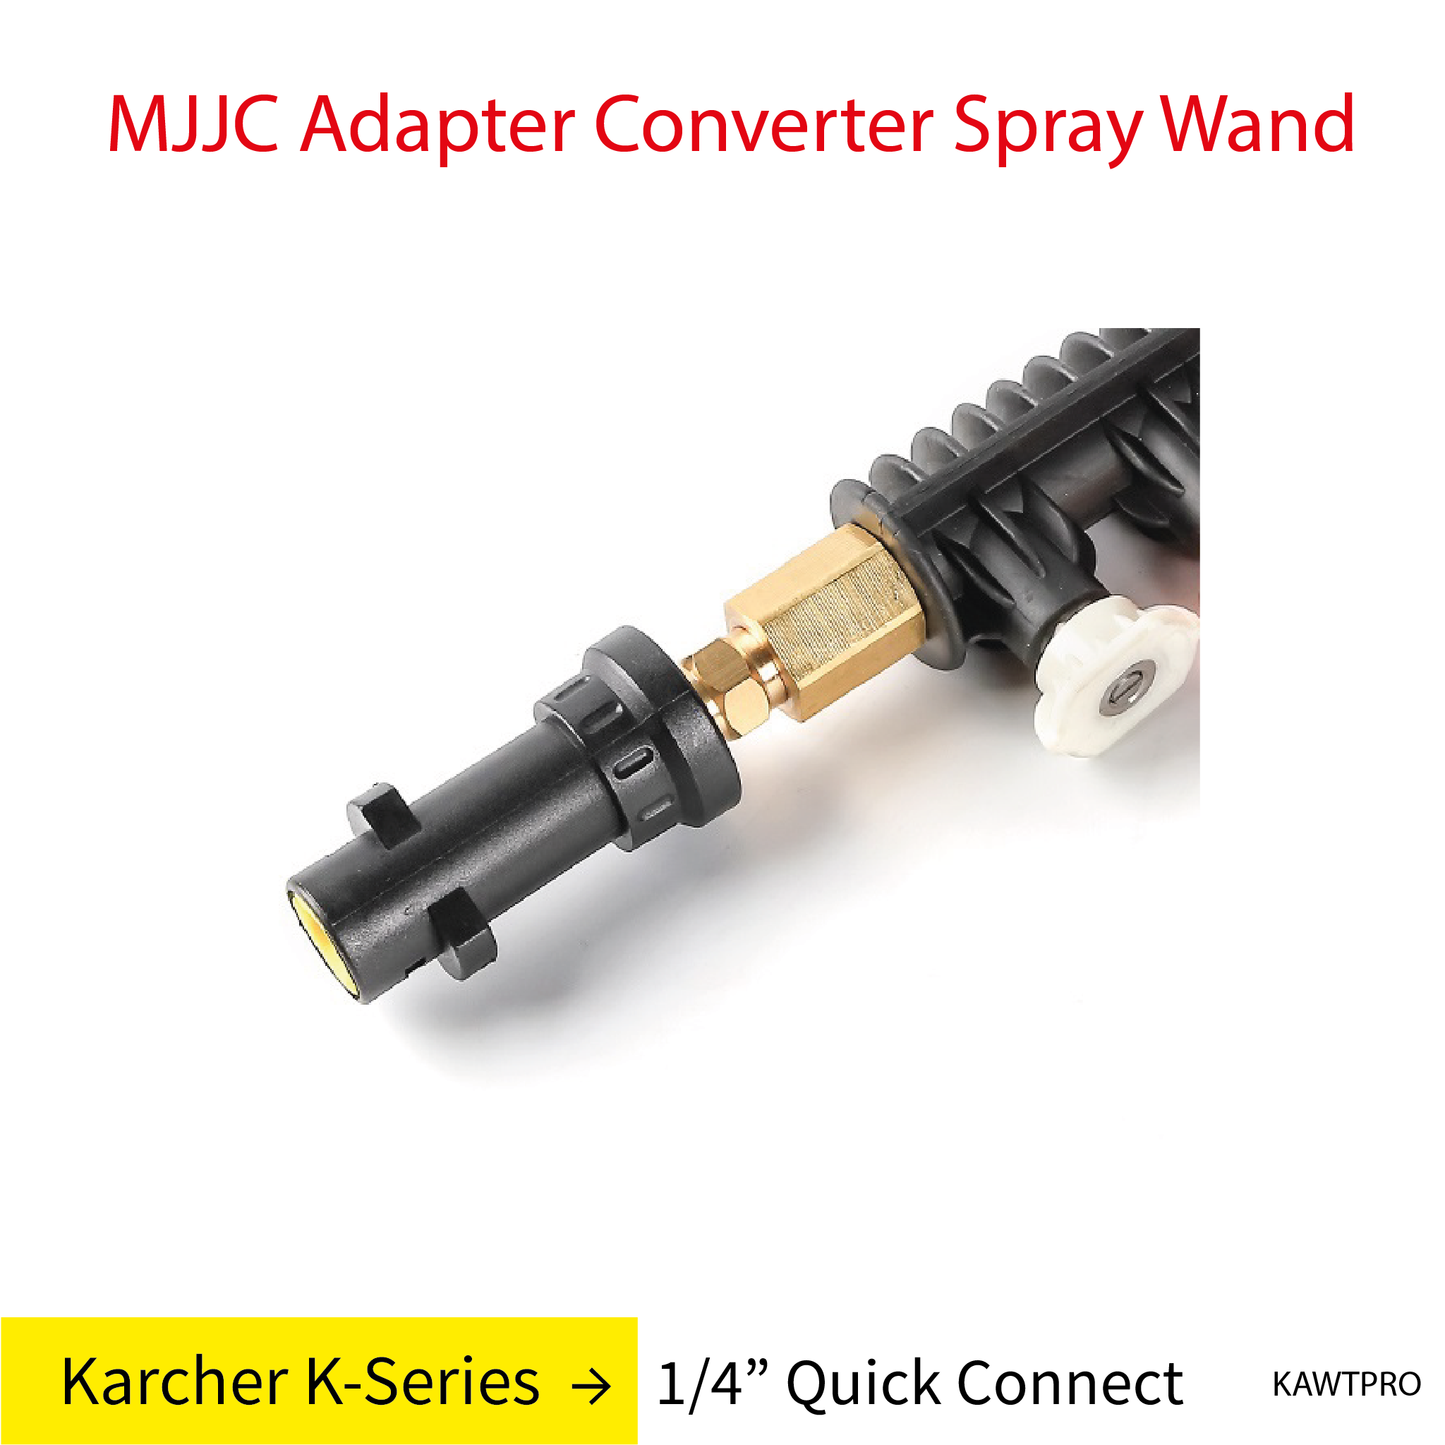 Karcher K-Series MJJC Pressure Washer Adapter Conversion Converter Spray